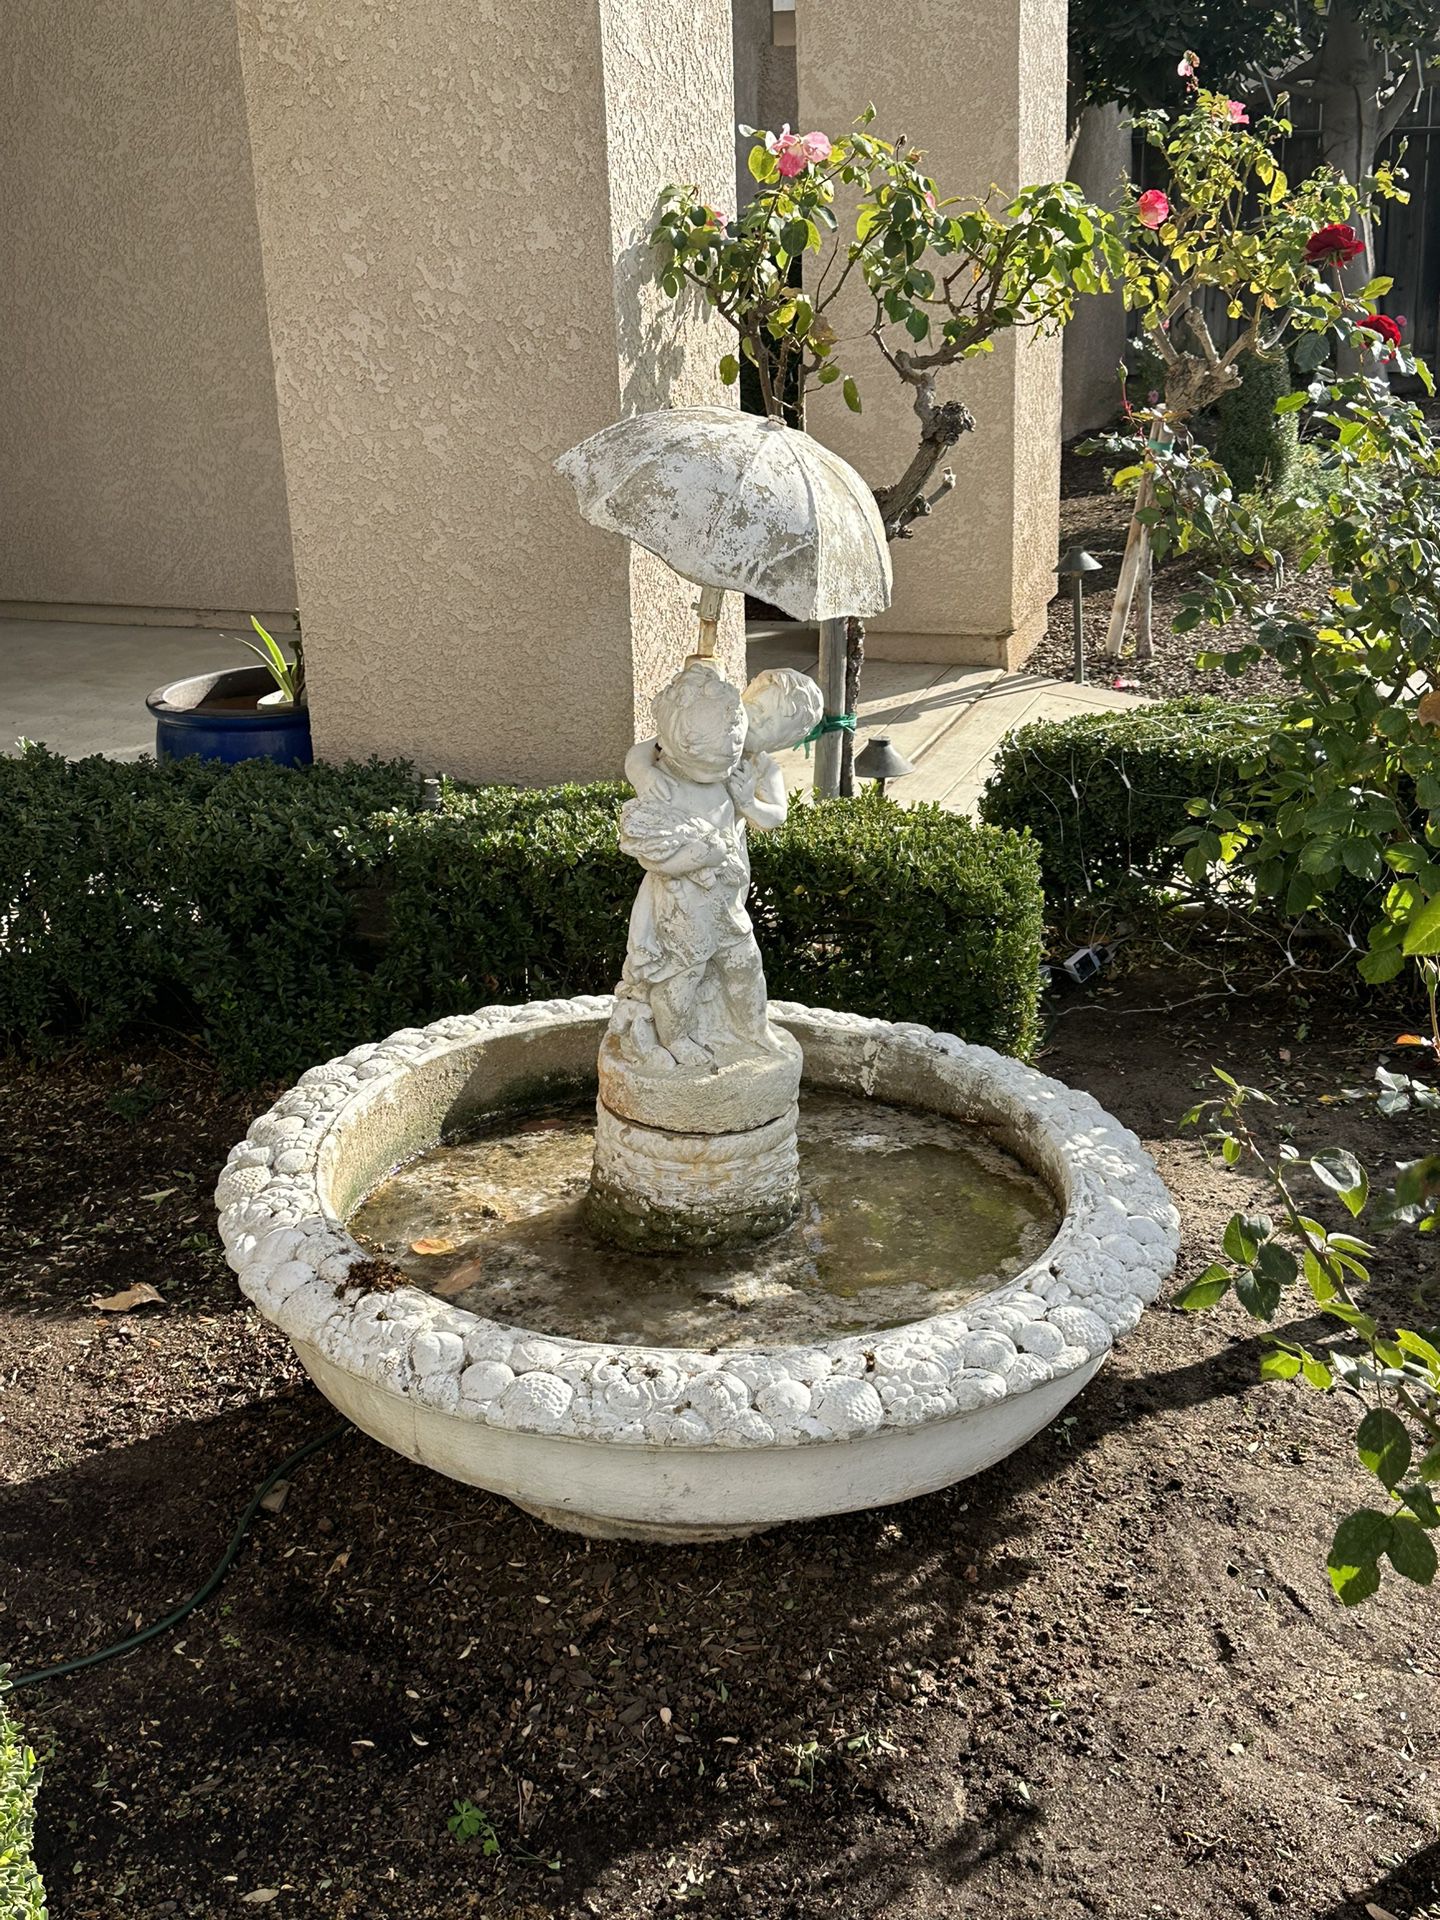 Concrete Water Fountain